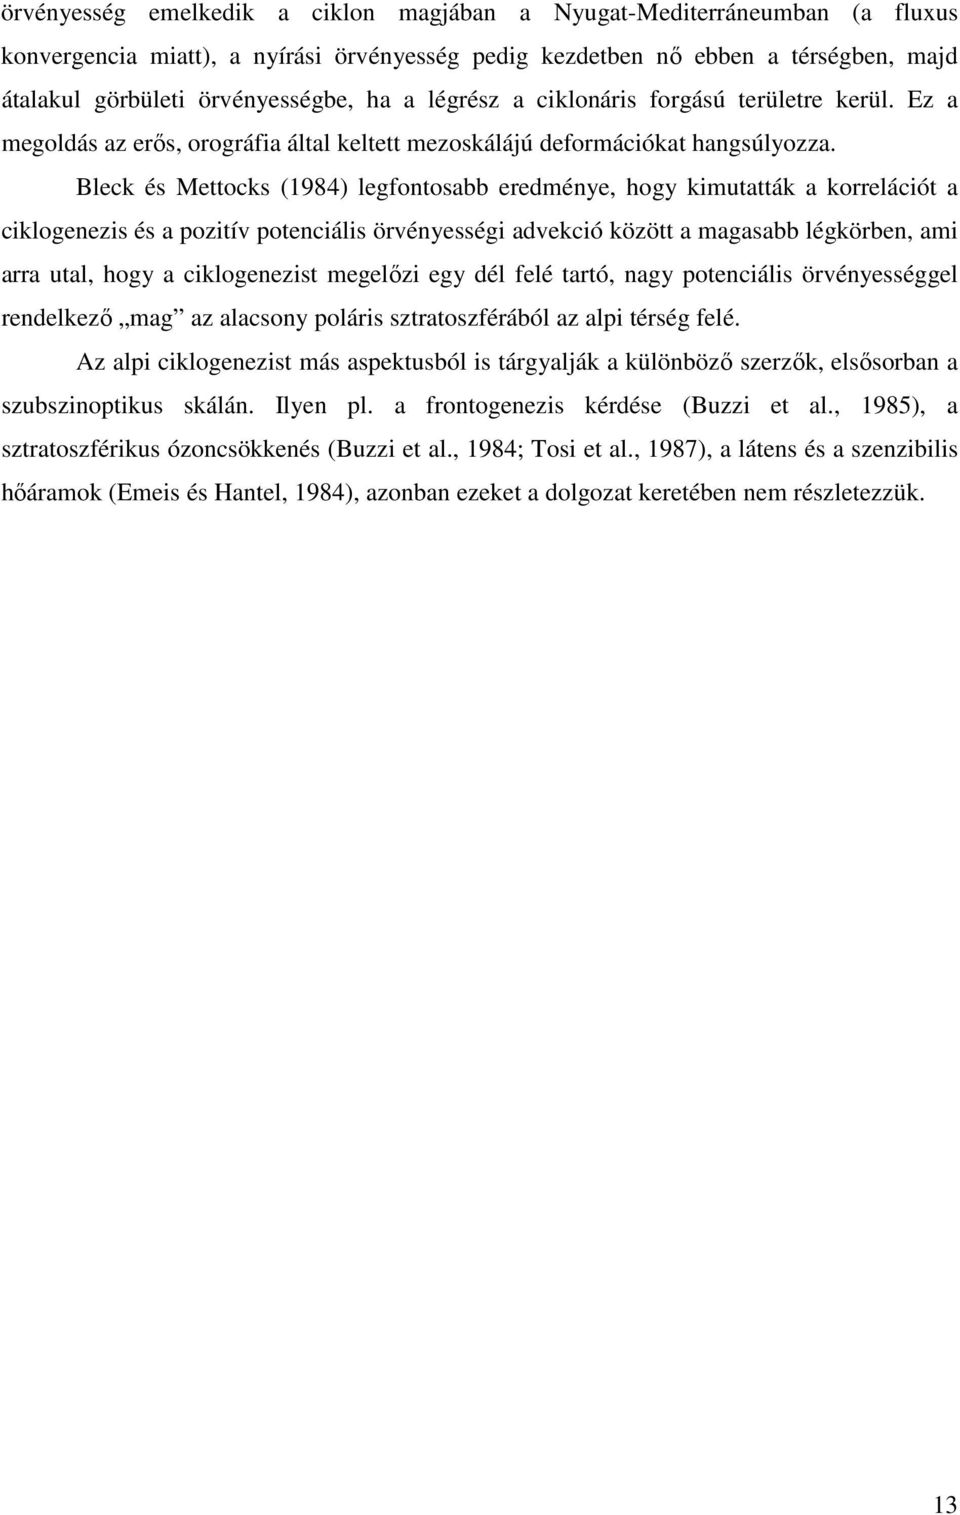 Bleck és Mettocks (1984) legfontosabb eredménye, hogy kimutatták a korrelációt a ciklogenezis és a pozitív potenciális örvényességi advekció között a magasabb légkörben, ami arra utal, hogy a